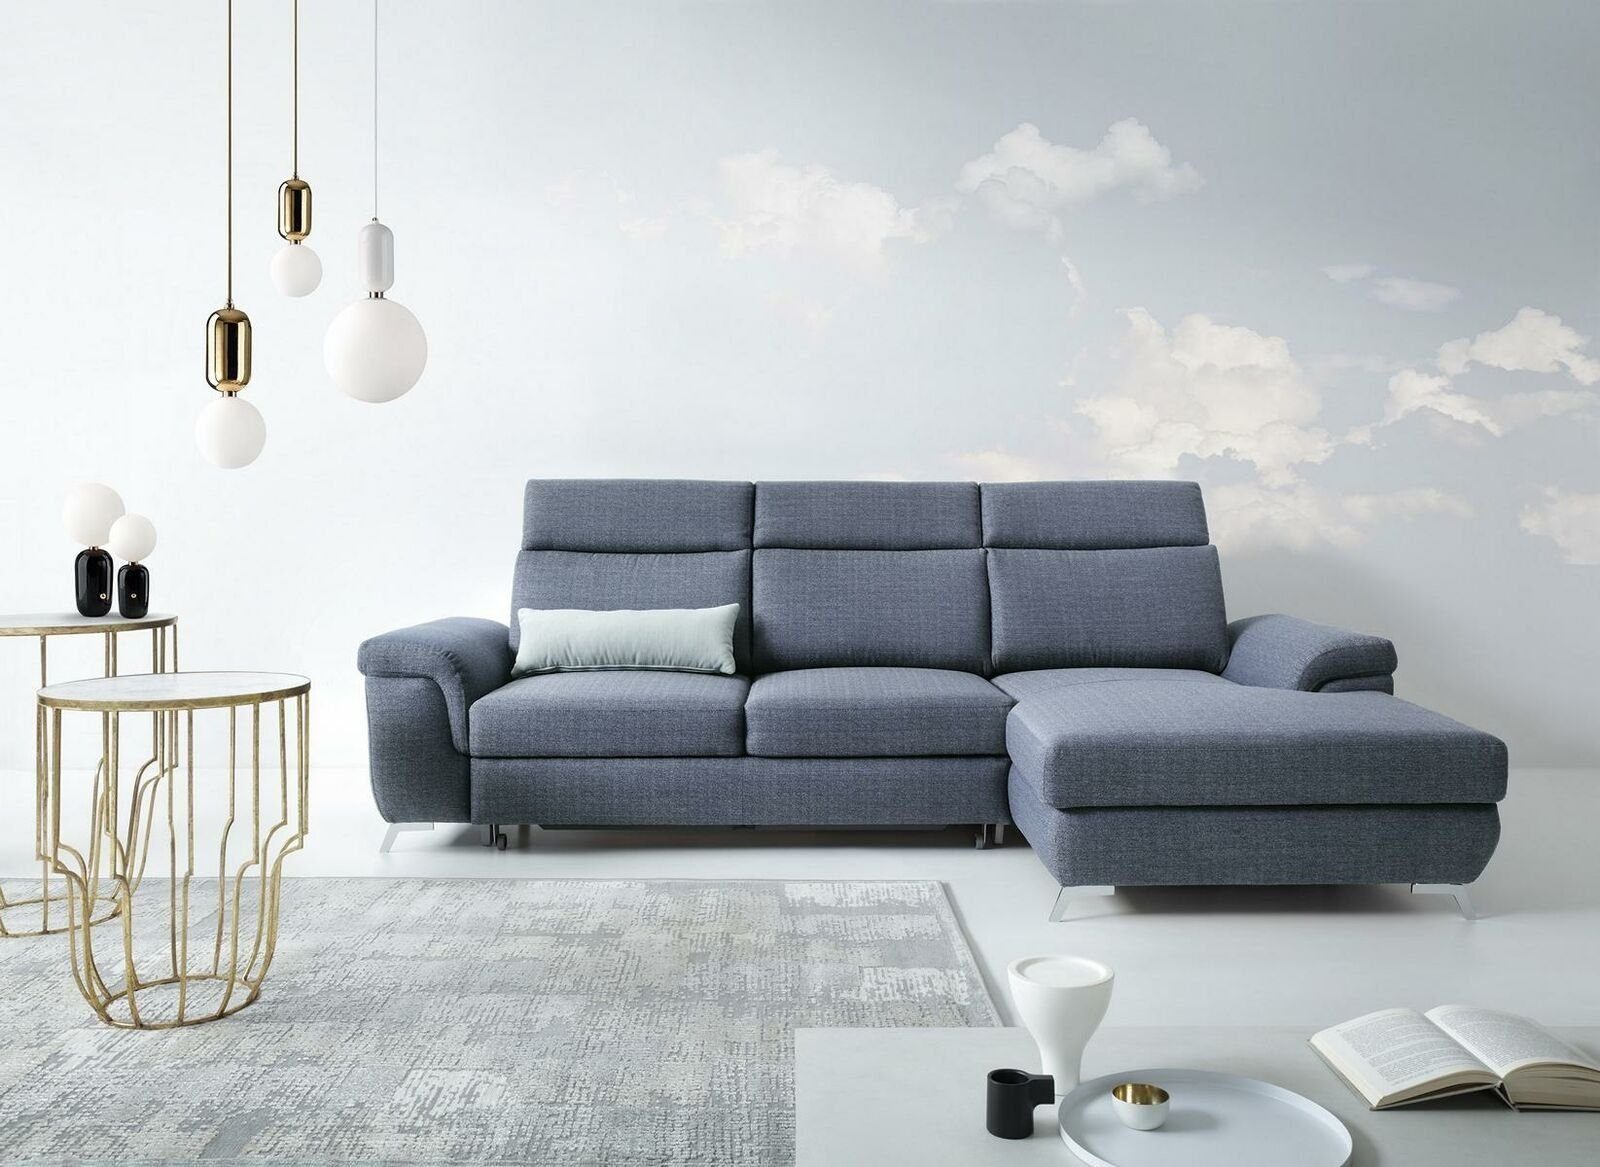 JVmoebel Ecksofa Wohnzimmer Textil L-Form Sofas Grau NEU Ecksofa Couch Polstermöbel